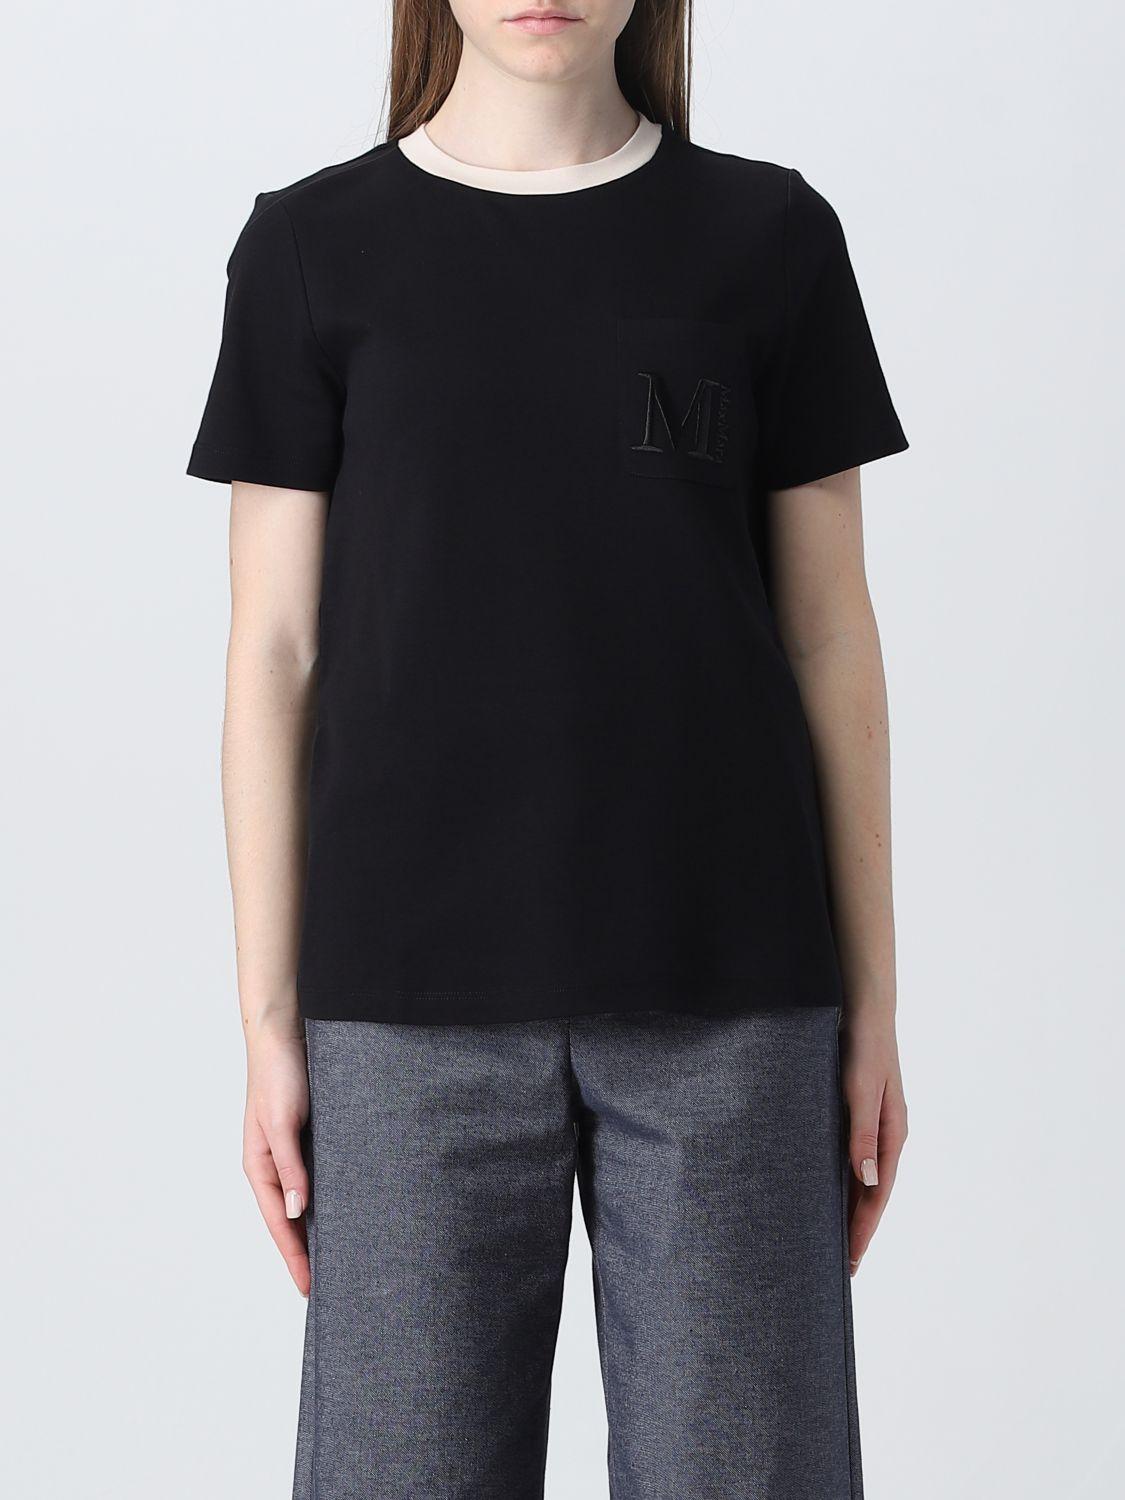 Max Mara T-shirt in Black | Lyst